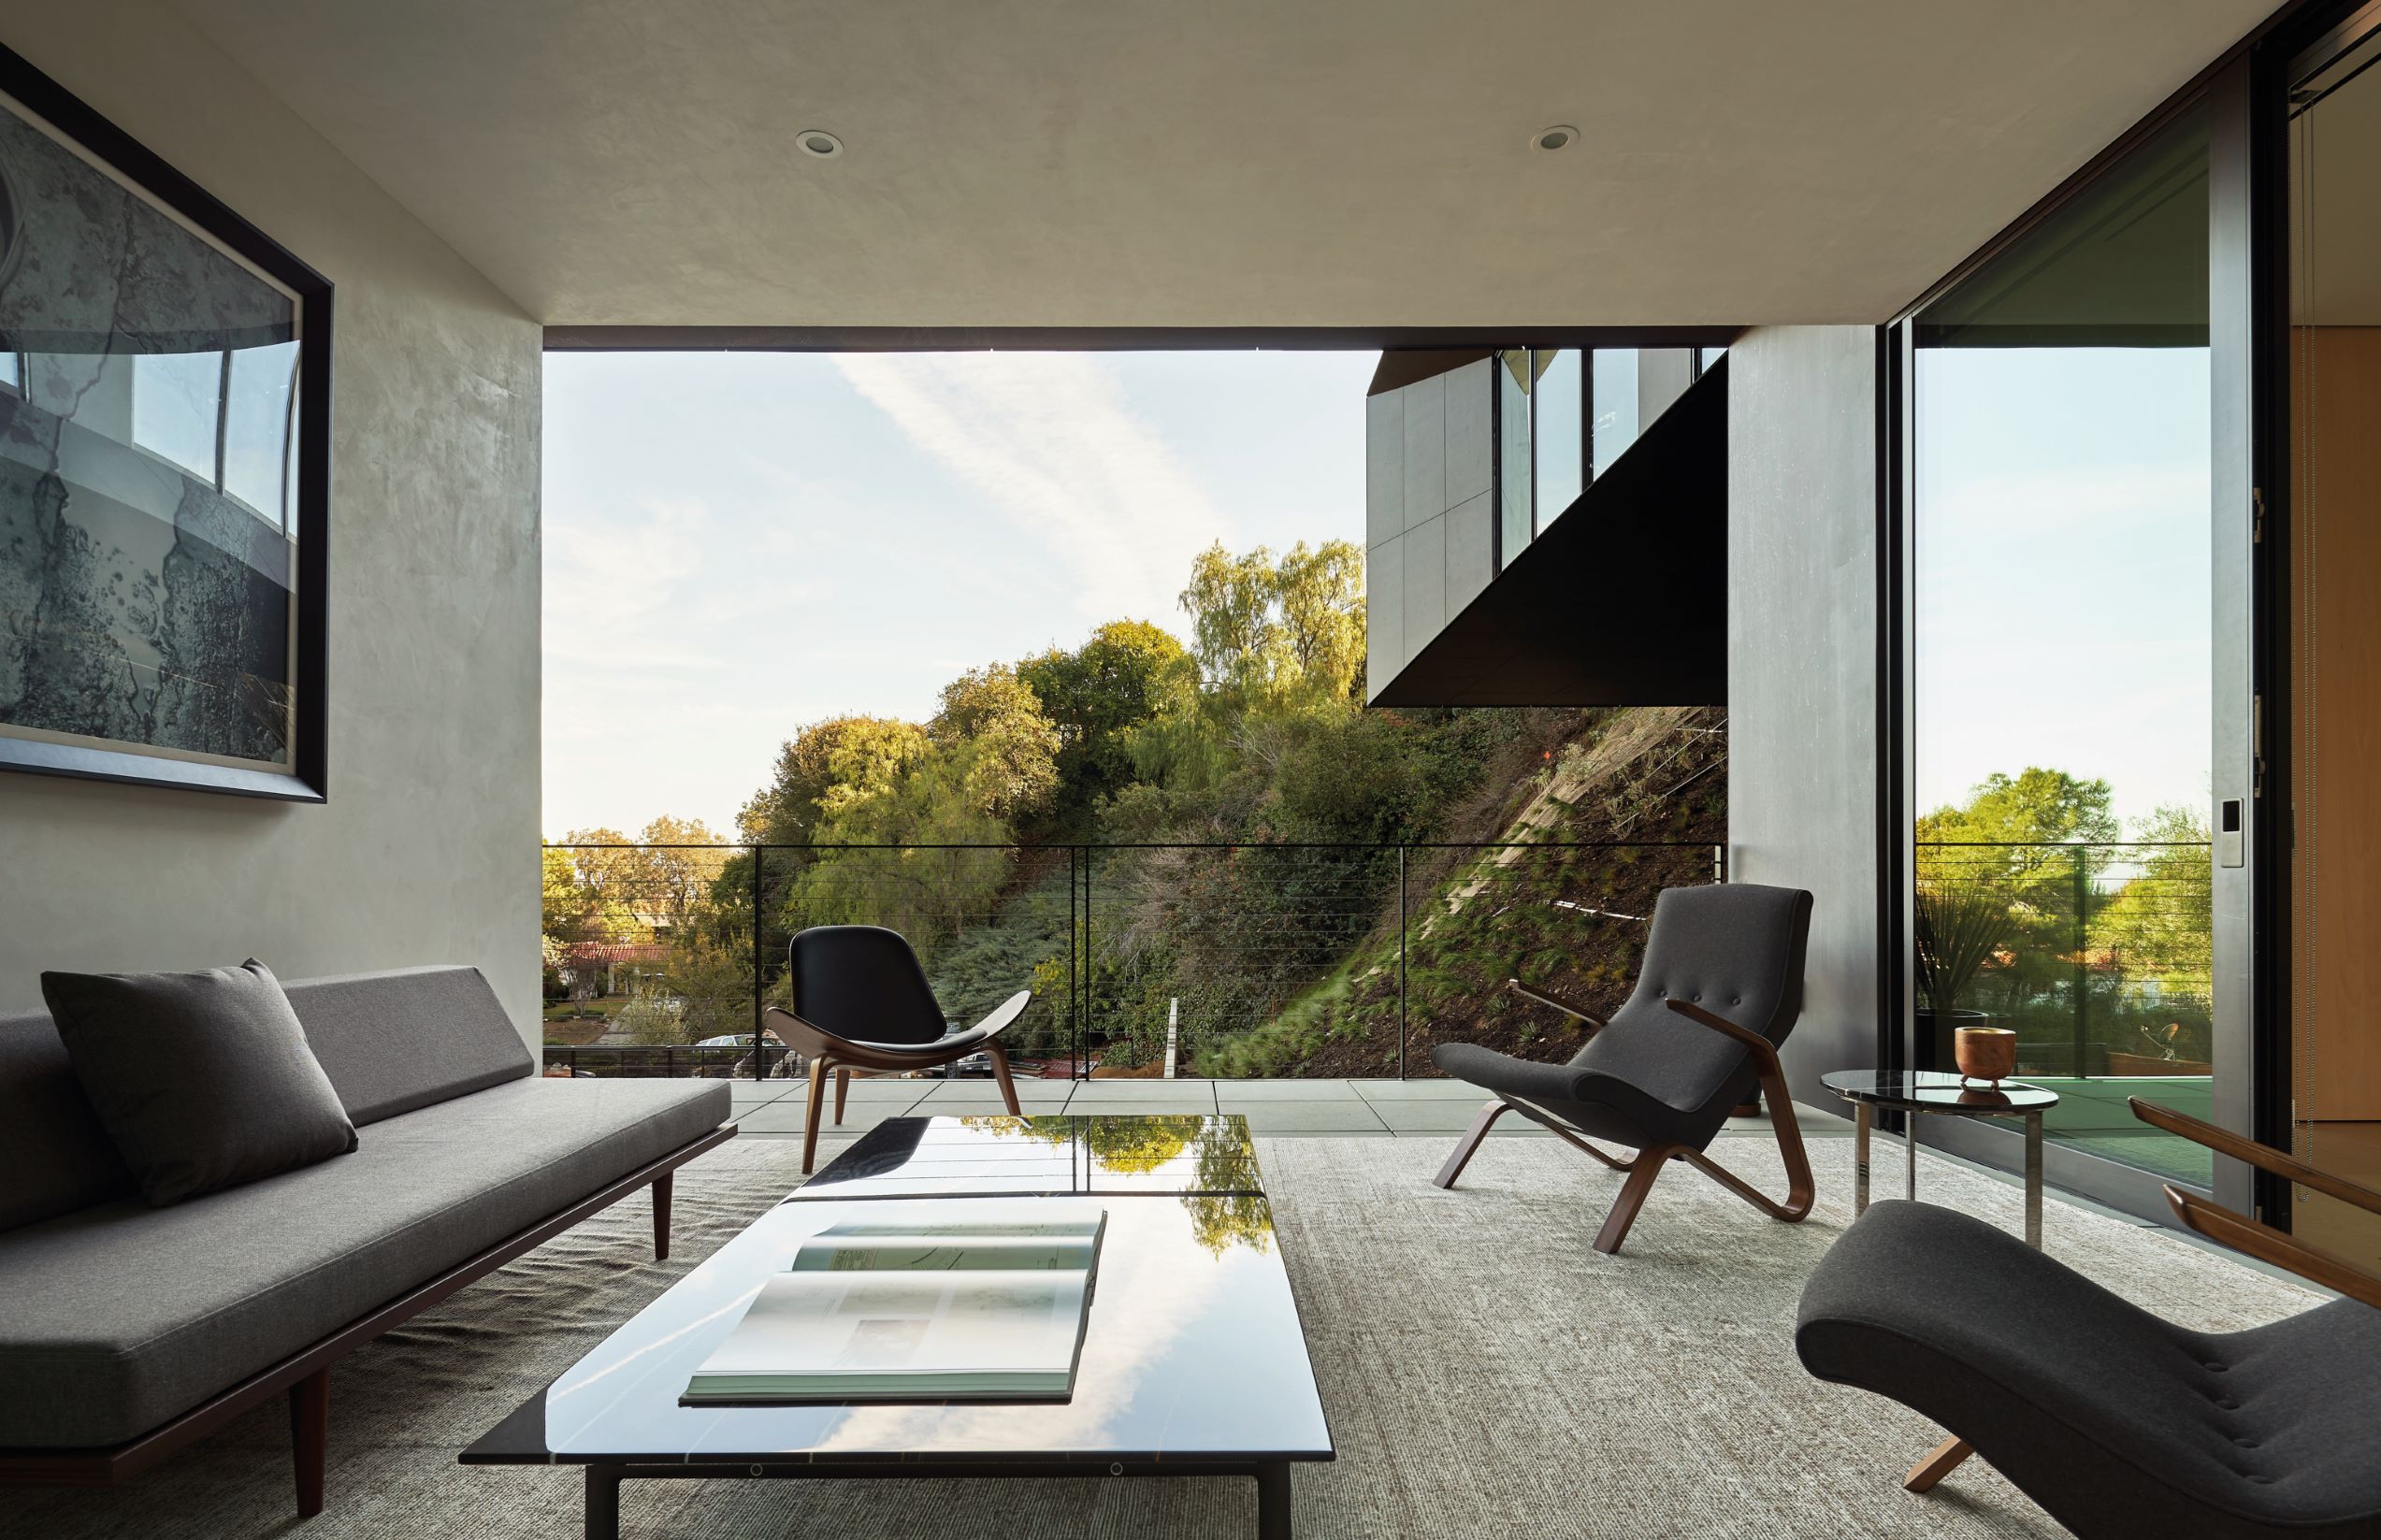 LR2 Residence 以玻璃窗墙、落地窗及半开放式露台等设计，组合出内外相互交错的空间美感。